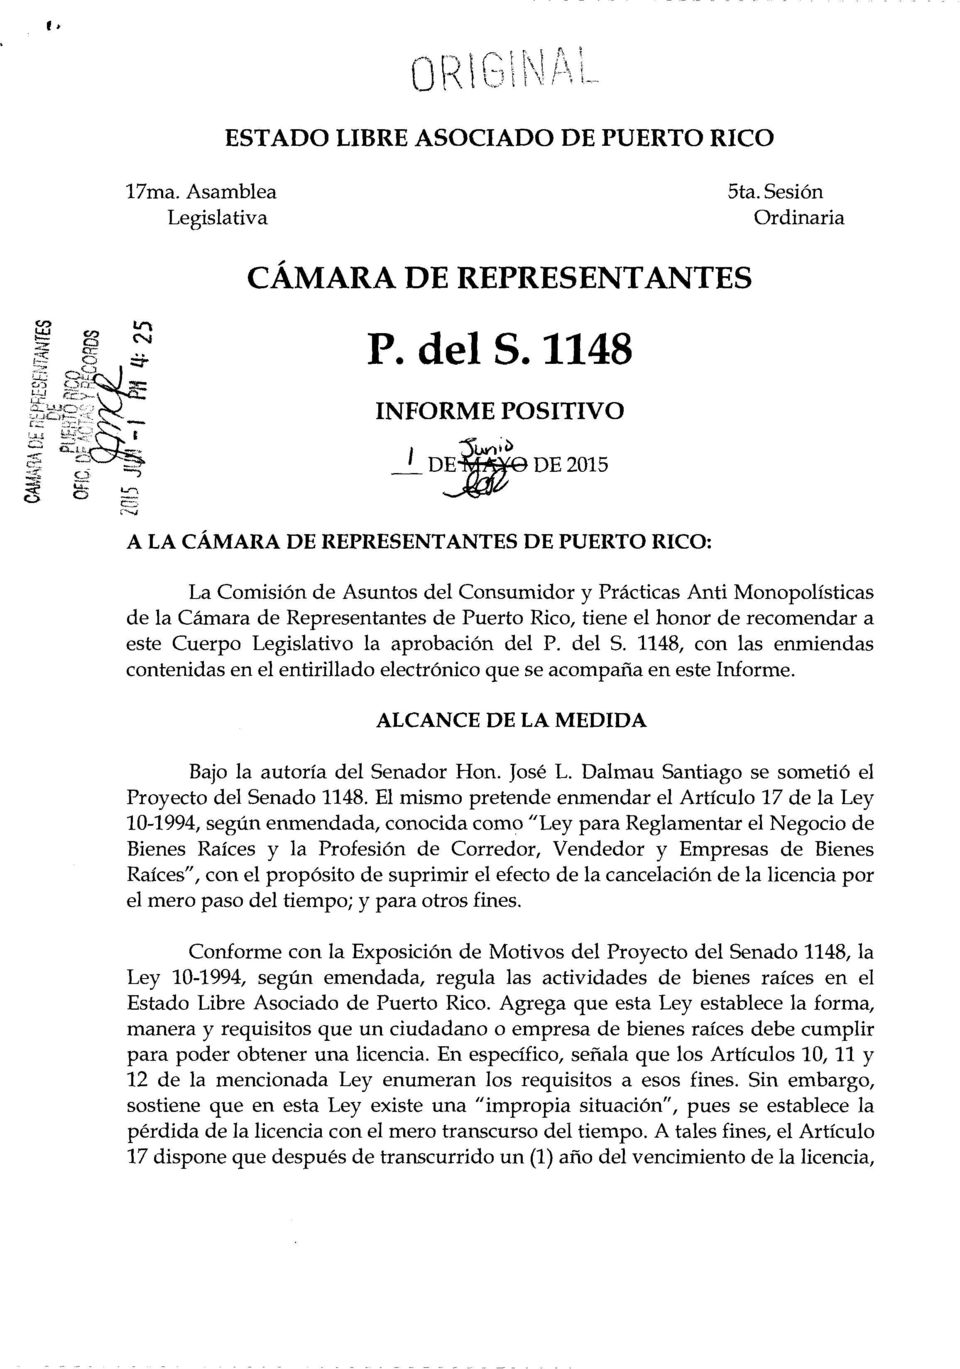 Rico, tiene el honor de recomendar a este Cuerpo Legislativo la aprobaci6n del P. del S. 1148, con las enmiendas contenidas en el entirillado electr6nico que se acompafia en este Informe.